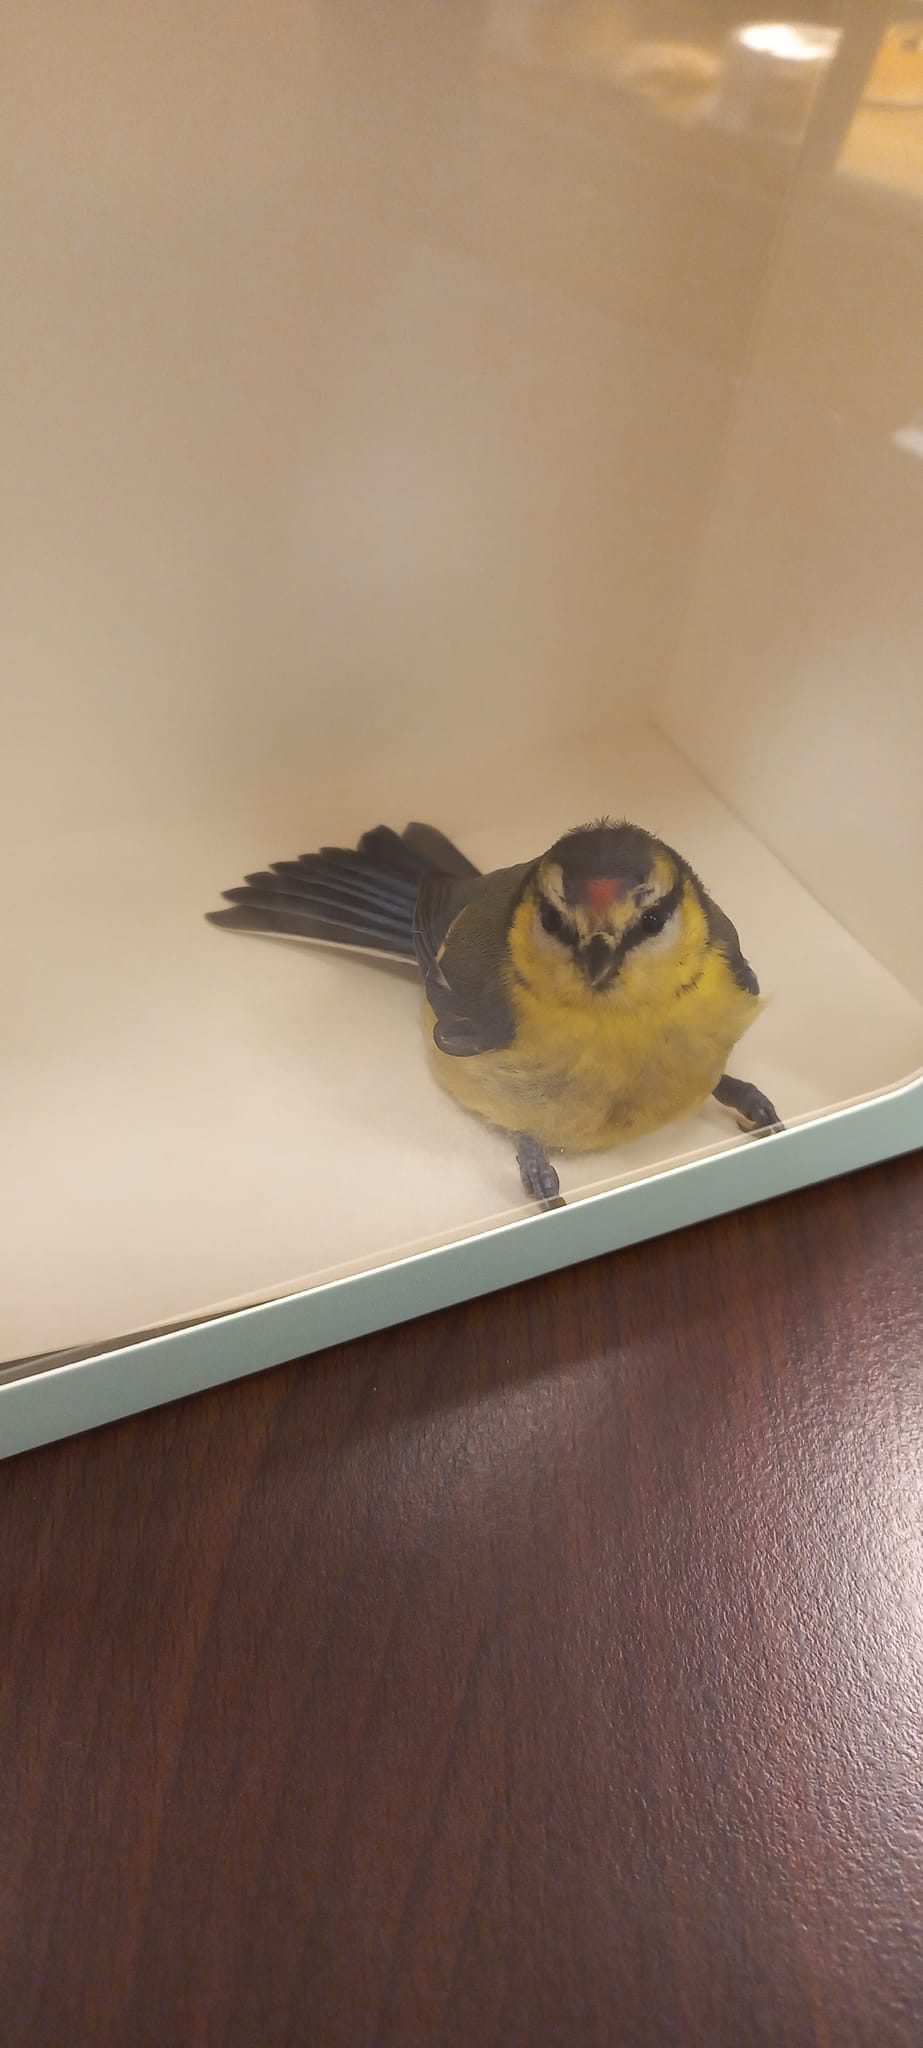 Į parduotuvę Šilainiuose atklydo paukštelis: ornitologas patarė, ką daryti